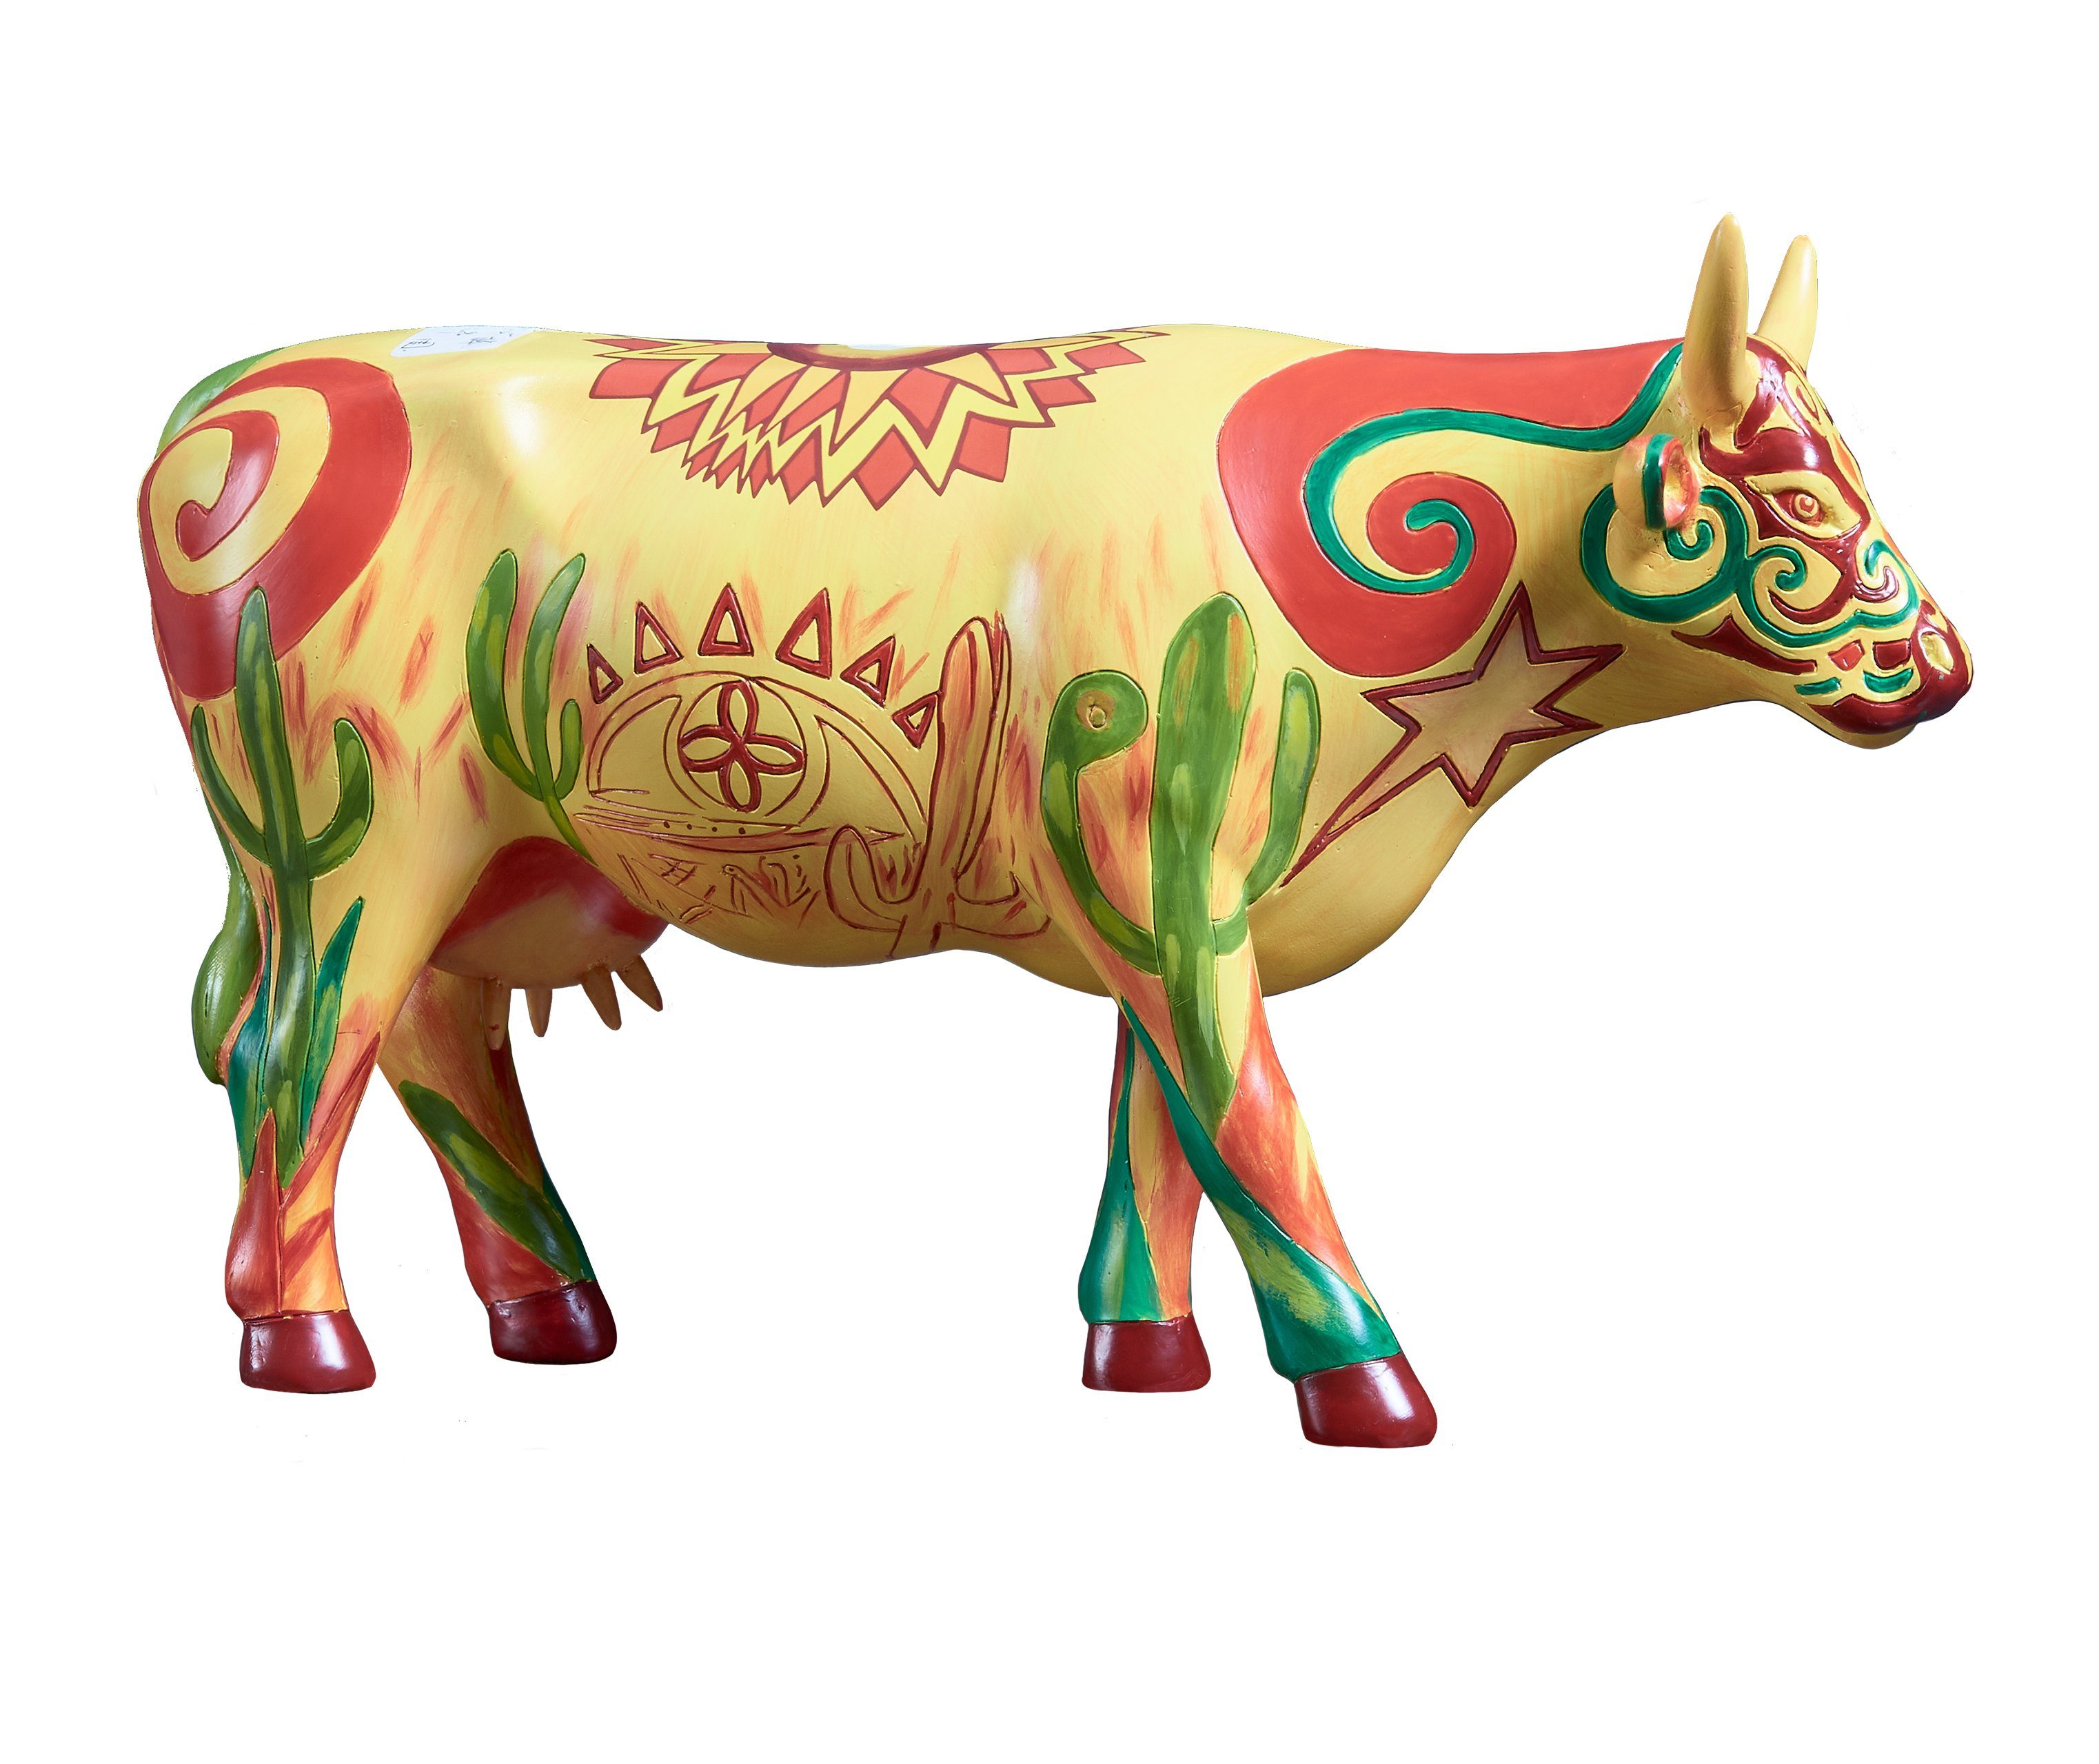 CowParade Tierfigur Vaca Sertaneja - Cowparade Kuh Large